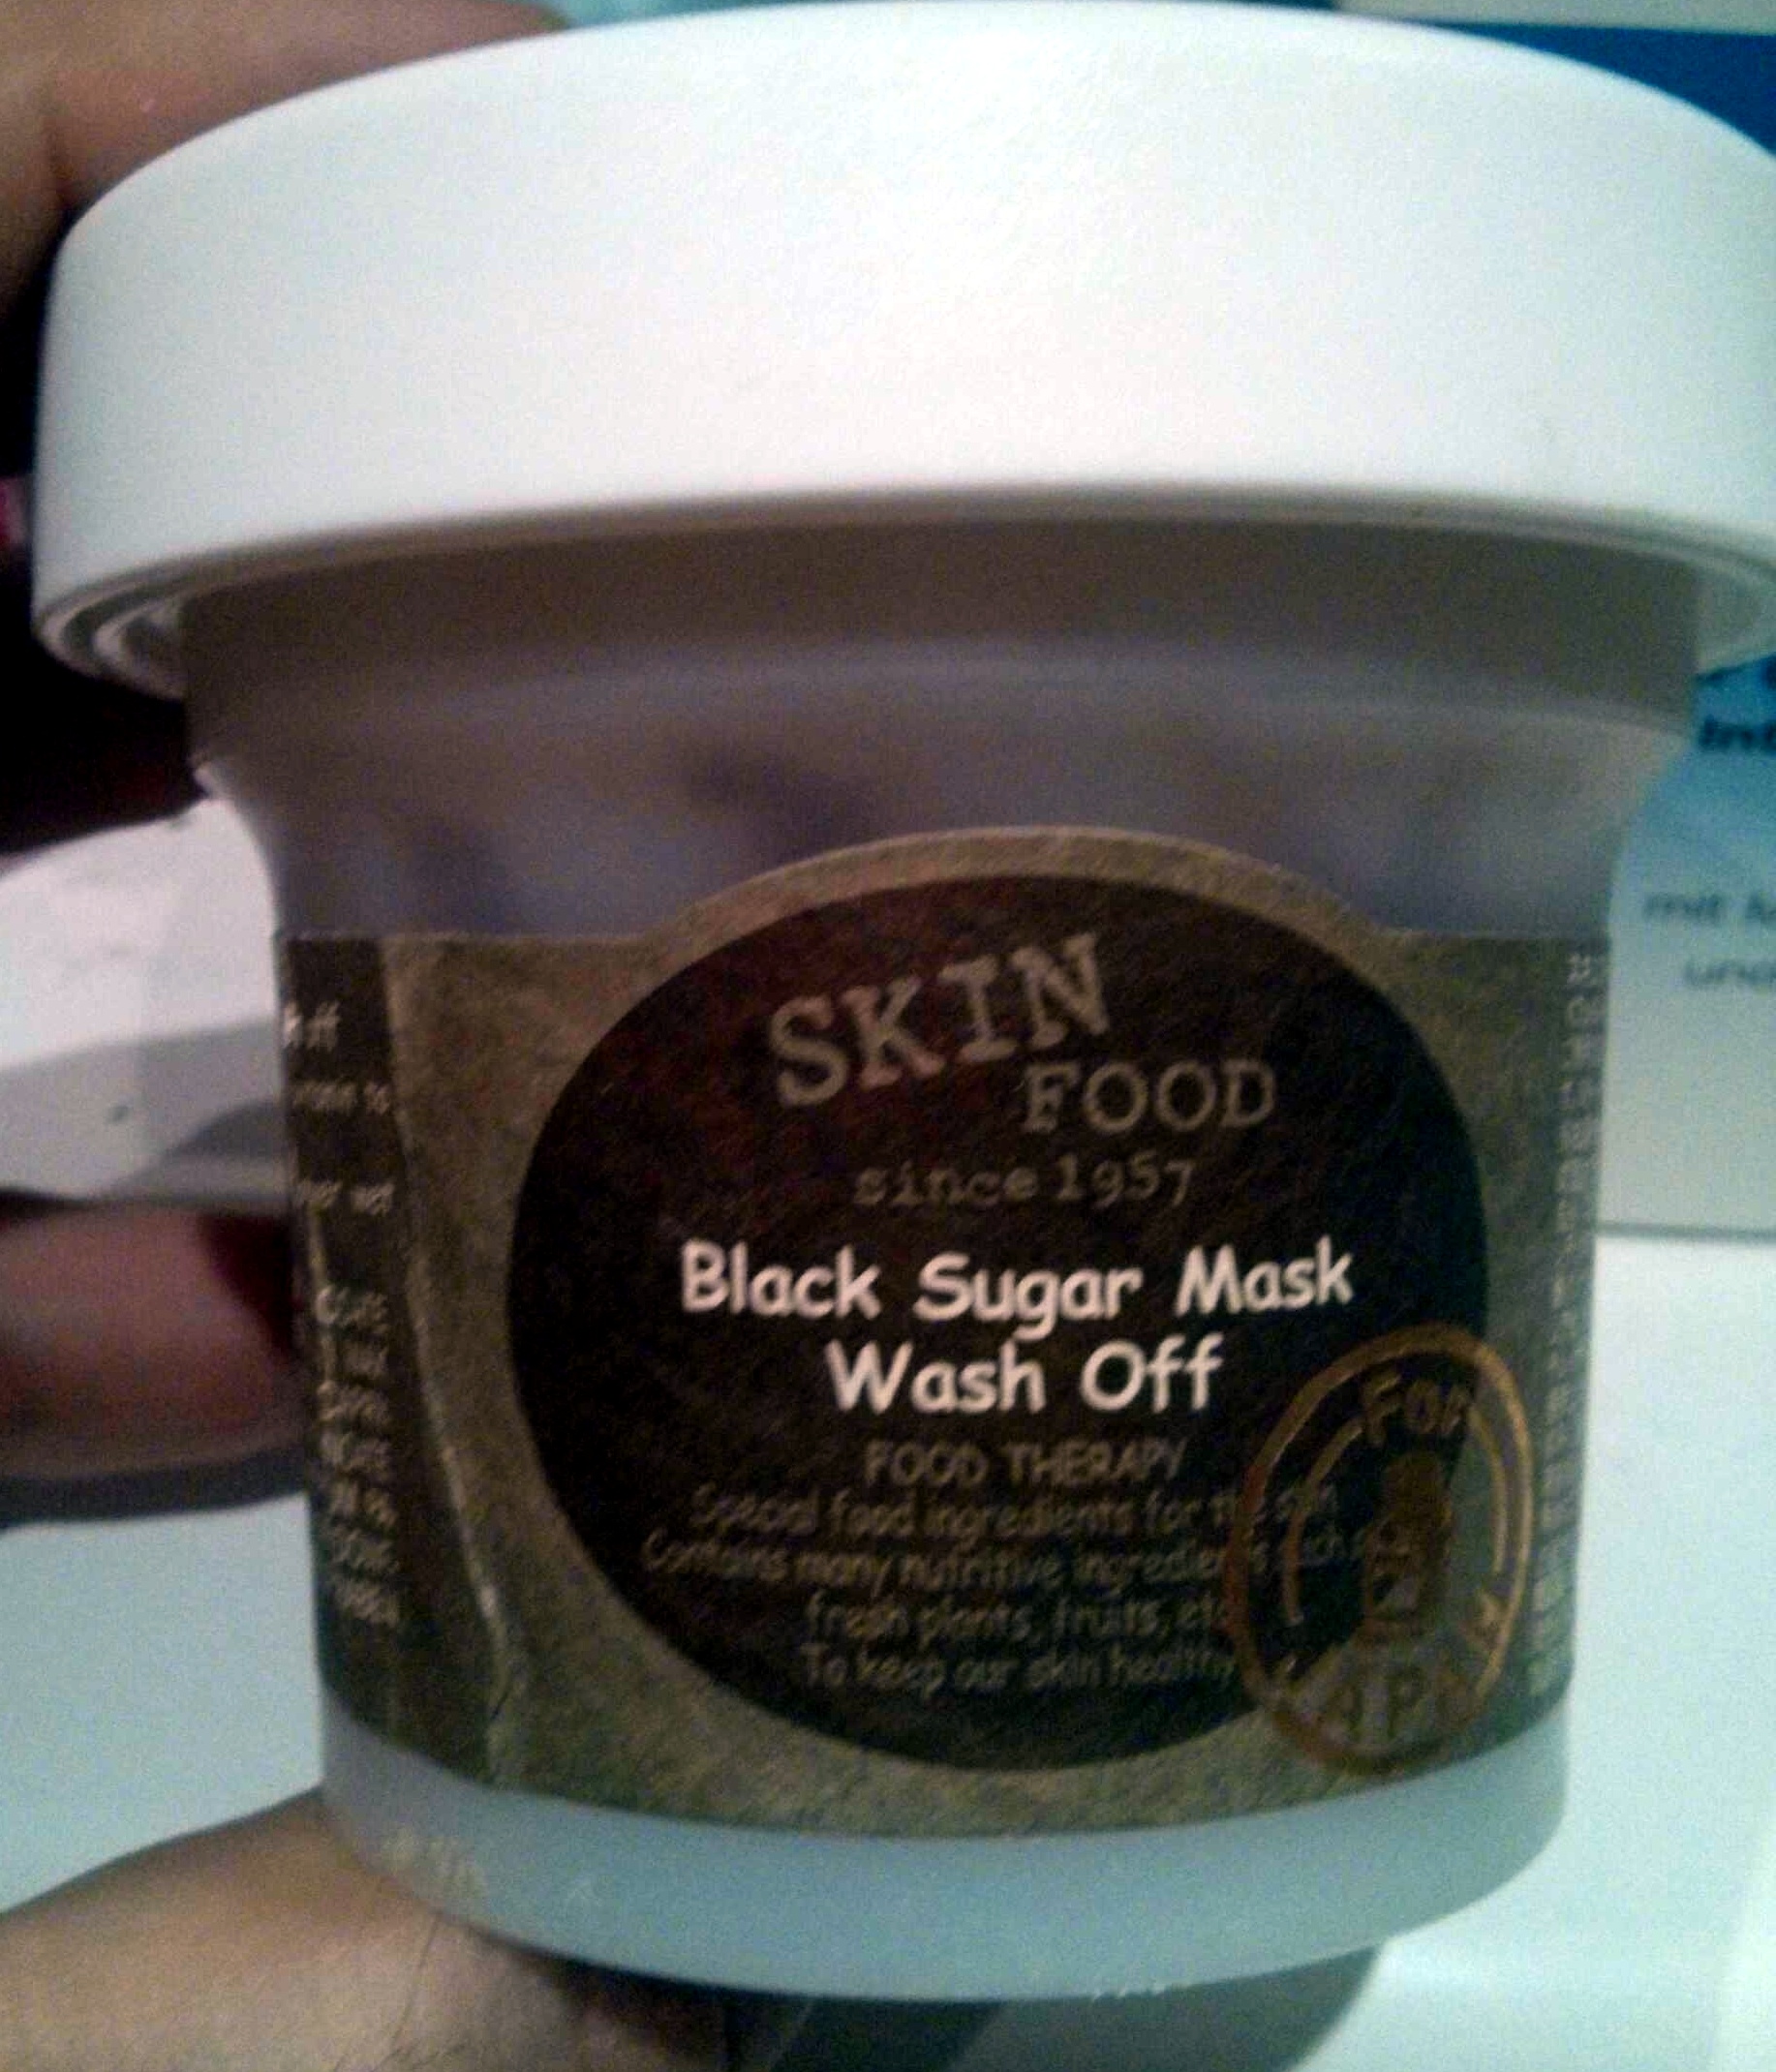 Black sugar mask wash off - Produto - en